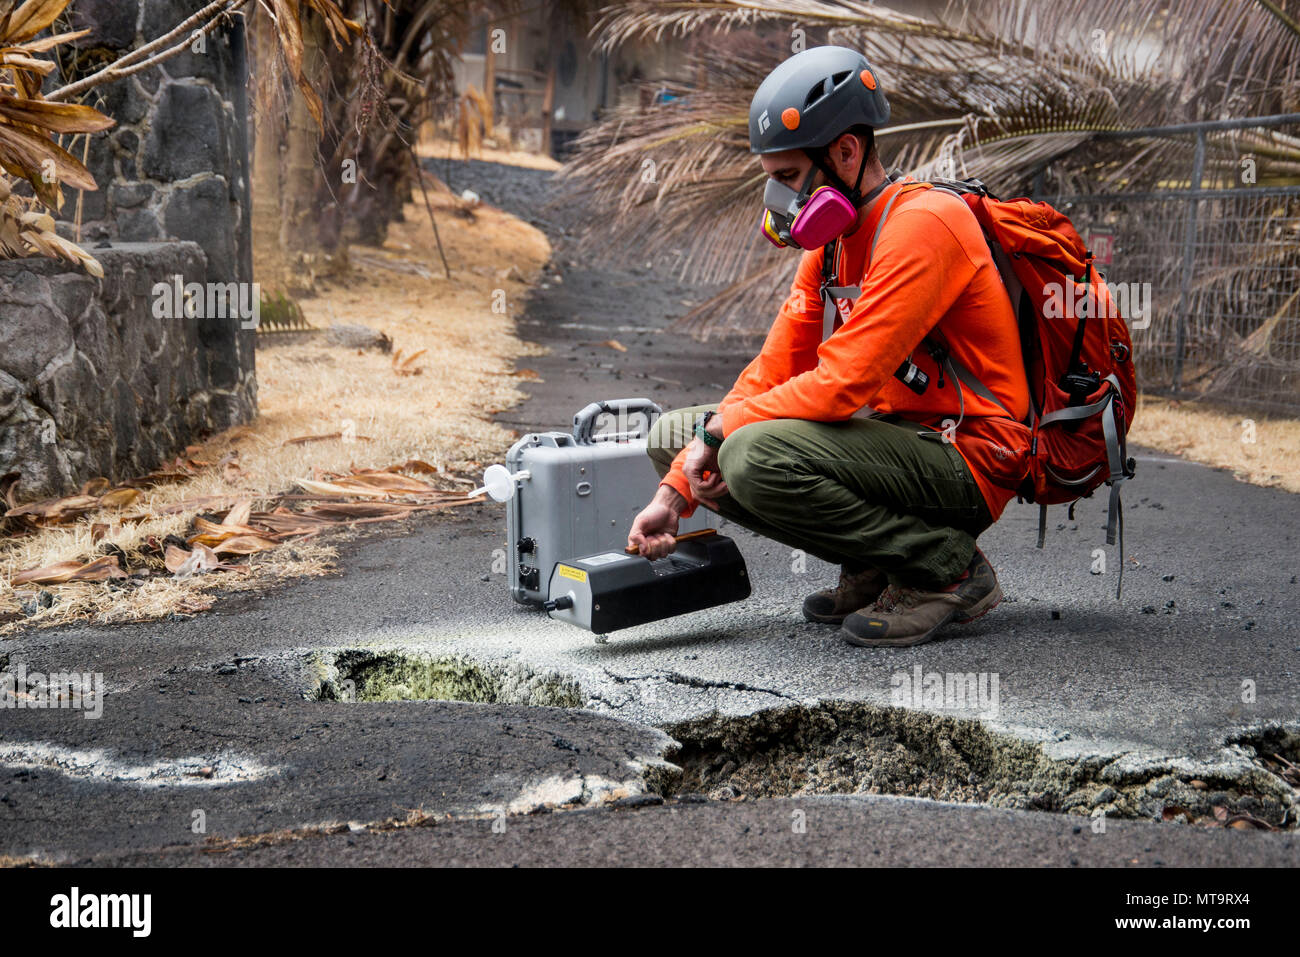 Pāhoa, Hawaii, 19. Mai 2018 - U.S. Geological Survey (USGS) freiwilliger Allen Lerner verwendet eine Schwefeldioxid (SO2) Sensor, um die Luftqualität zu prüfen, nachdem der Kīlauea Vulkanausbruch. Die Wohngegend von Leilani Estates hat sich aufgrund der hohen Konzentration von SO2-Emissionen aus der Risse in die Erde, dass Lava in den Unterteilungen verschüttete evakuiert worden. Auf Ersuchen des Staates, FEMA-Mitarbeiter sind im lokalen Beamten mit Leben zu unterstützen platzsparende Not-aus Schutzmaßnahmen, Fremdkörper entfernen, und die Reparatur, Ersatz oder Wiederherstellung der Katastrophe - öffentlich beschädigt - Einrichtungen. Foto: Stockfoto